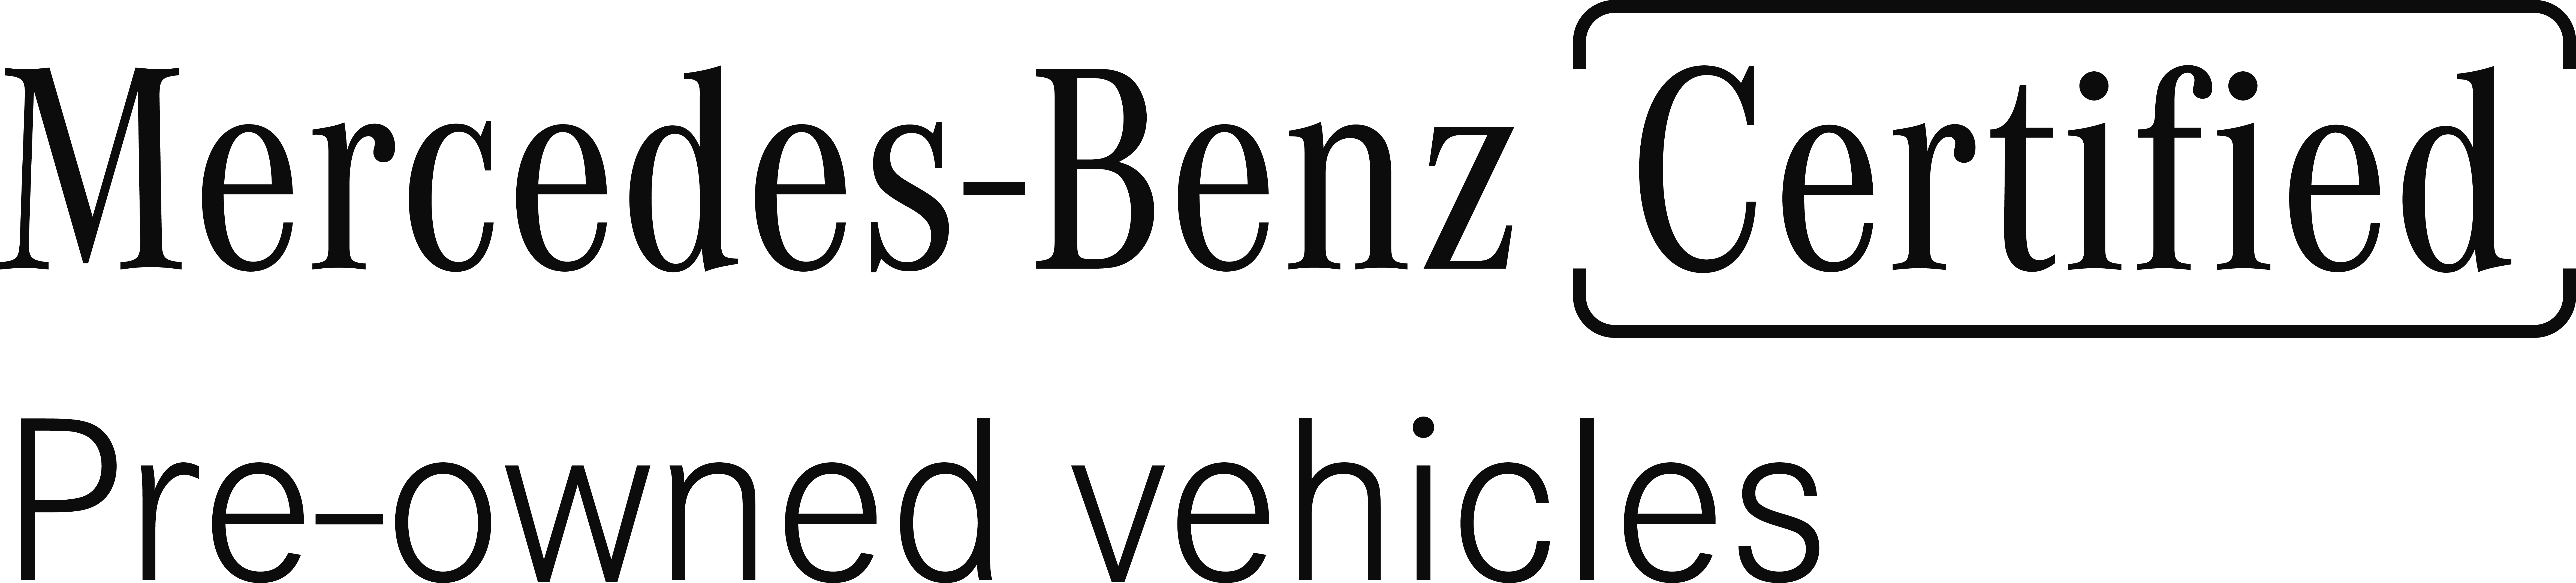 2021 Mercedes-Benz E-Class Base W1KZF8EB0MA937466 21HO1192 in Brampton